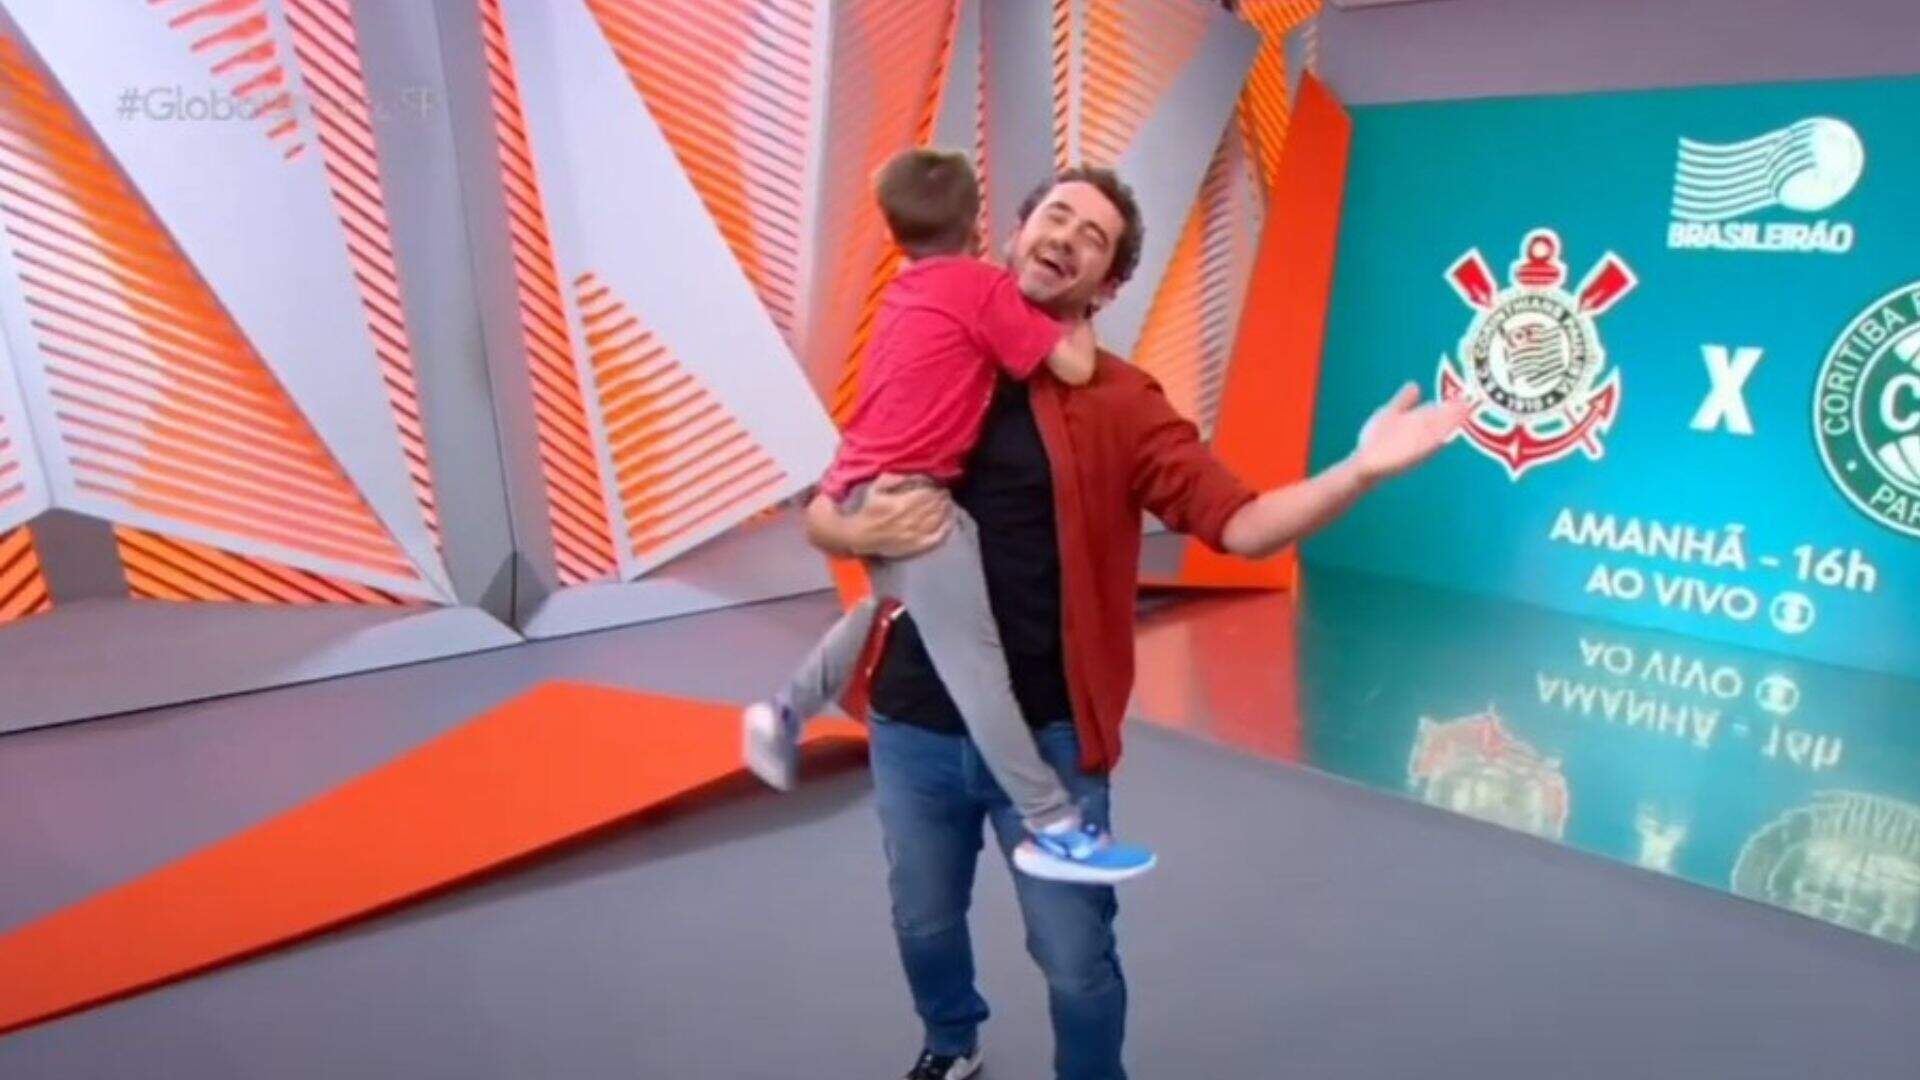 As vésperas do Dia dos Pais, filho de Felipe Andreoli invade estúdio do ‘Globo Esporte’ e deixa o apresentador encantado: “Hoje pode” - Metropolitana FM